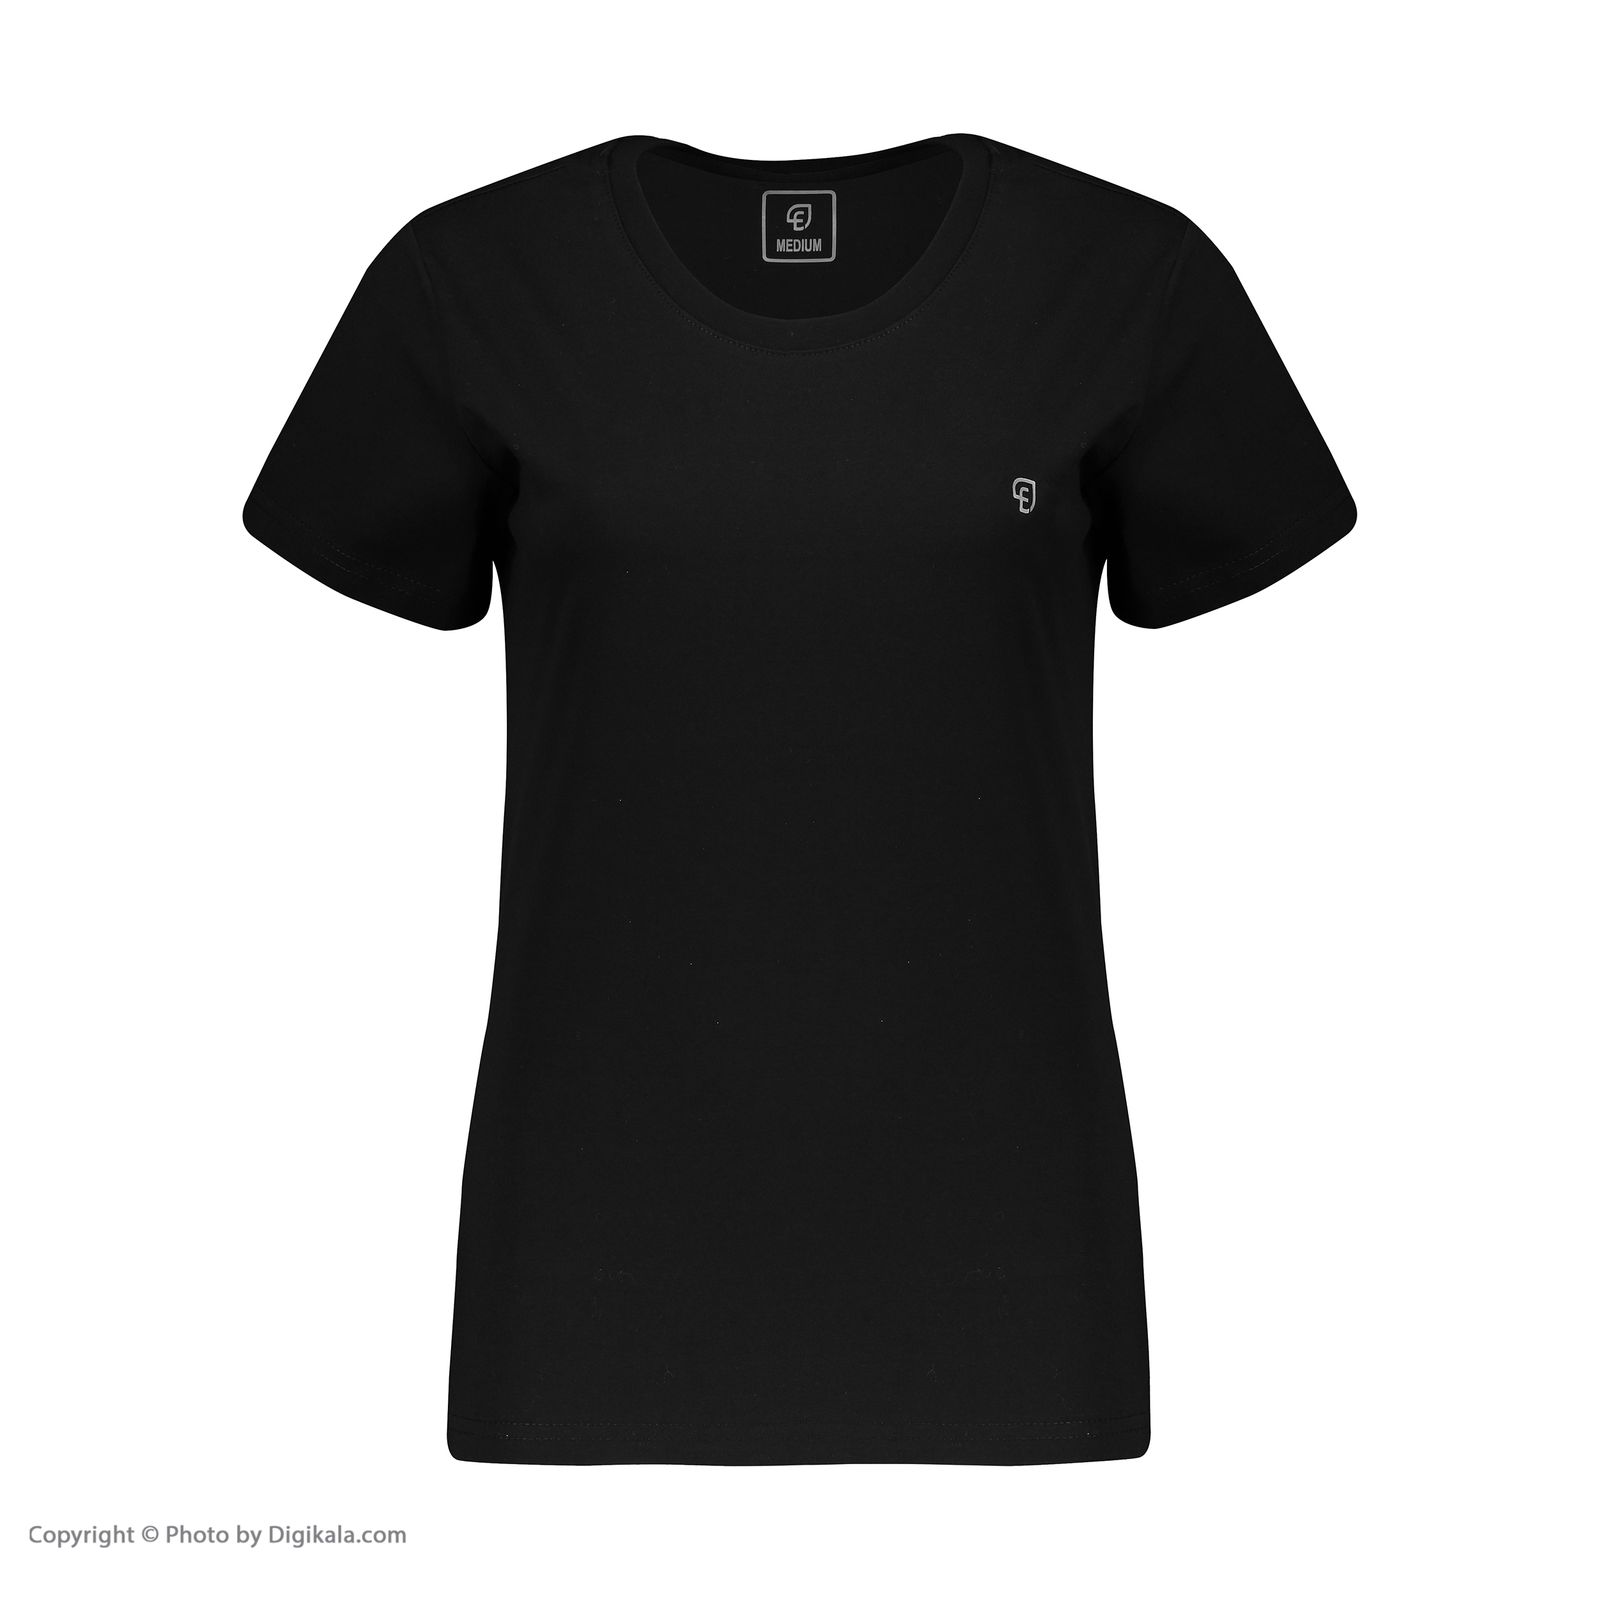 تی شرت آستین کوتاه زنانه الوج مدل W07186-001 -  - 2